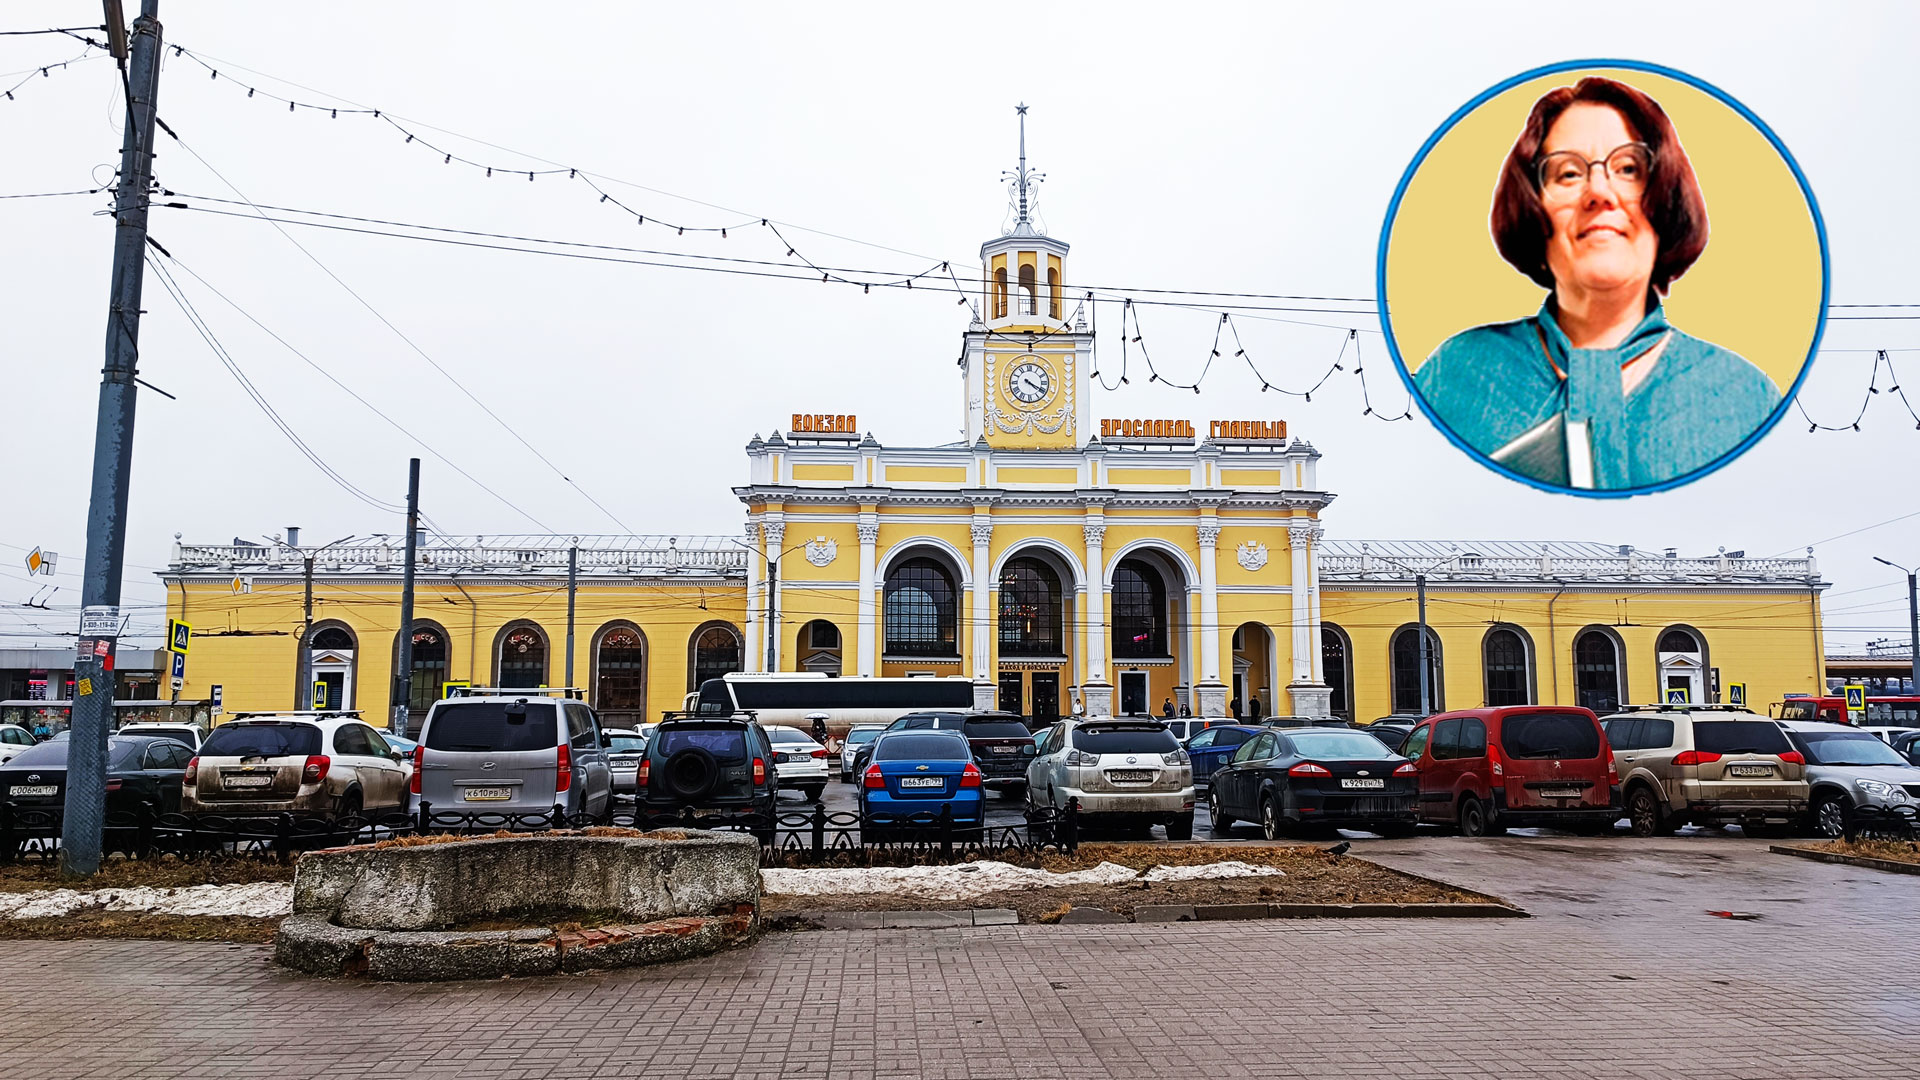 Ярославль-Главный вокзал: информация про расписание, билеты и услуги.